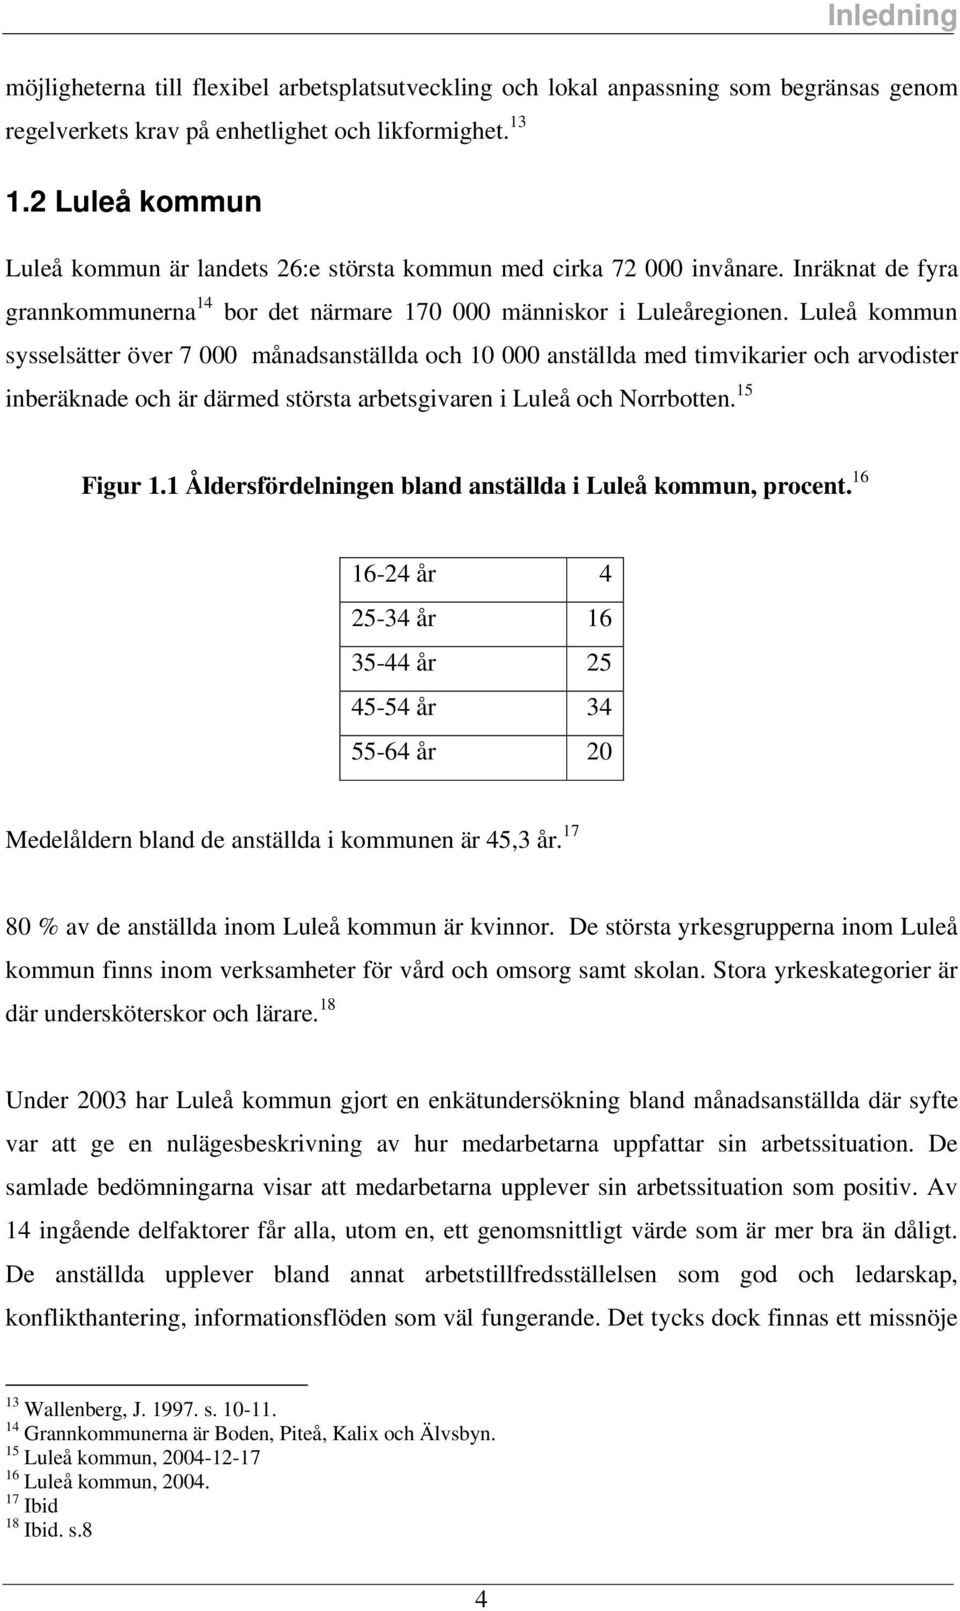 Luleå kommun yelätter över 7 000 månadantällda och 10 000 antällda med timvikarier och arvoditer inberäknade och är därmed törta arbetgivaren i Luleå och orrbotten. 15 Figur 1.